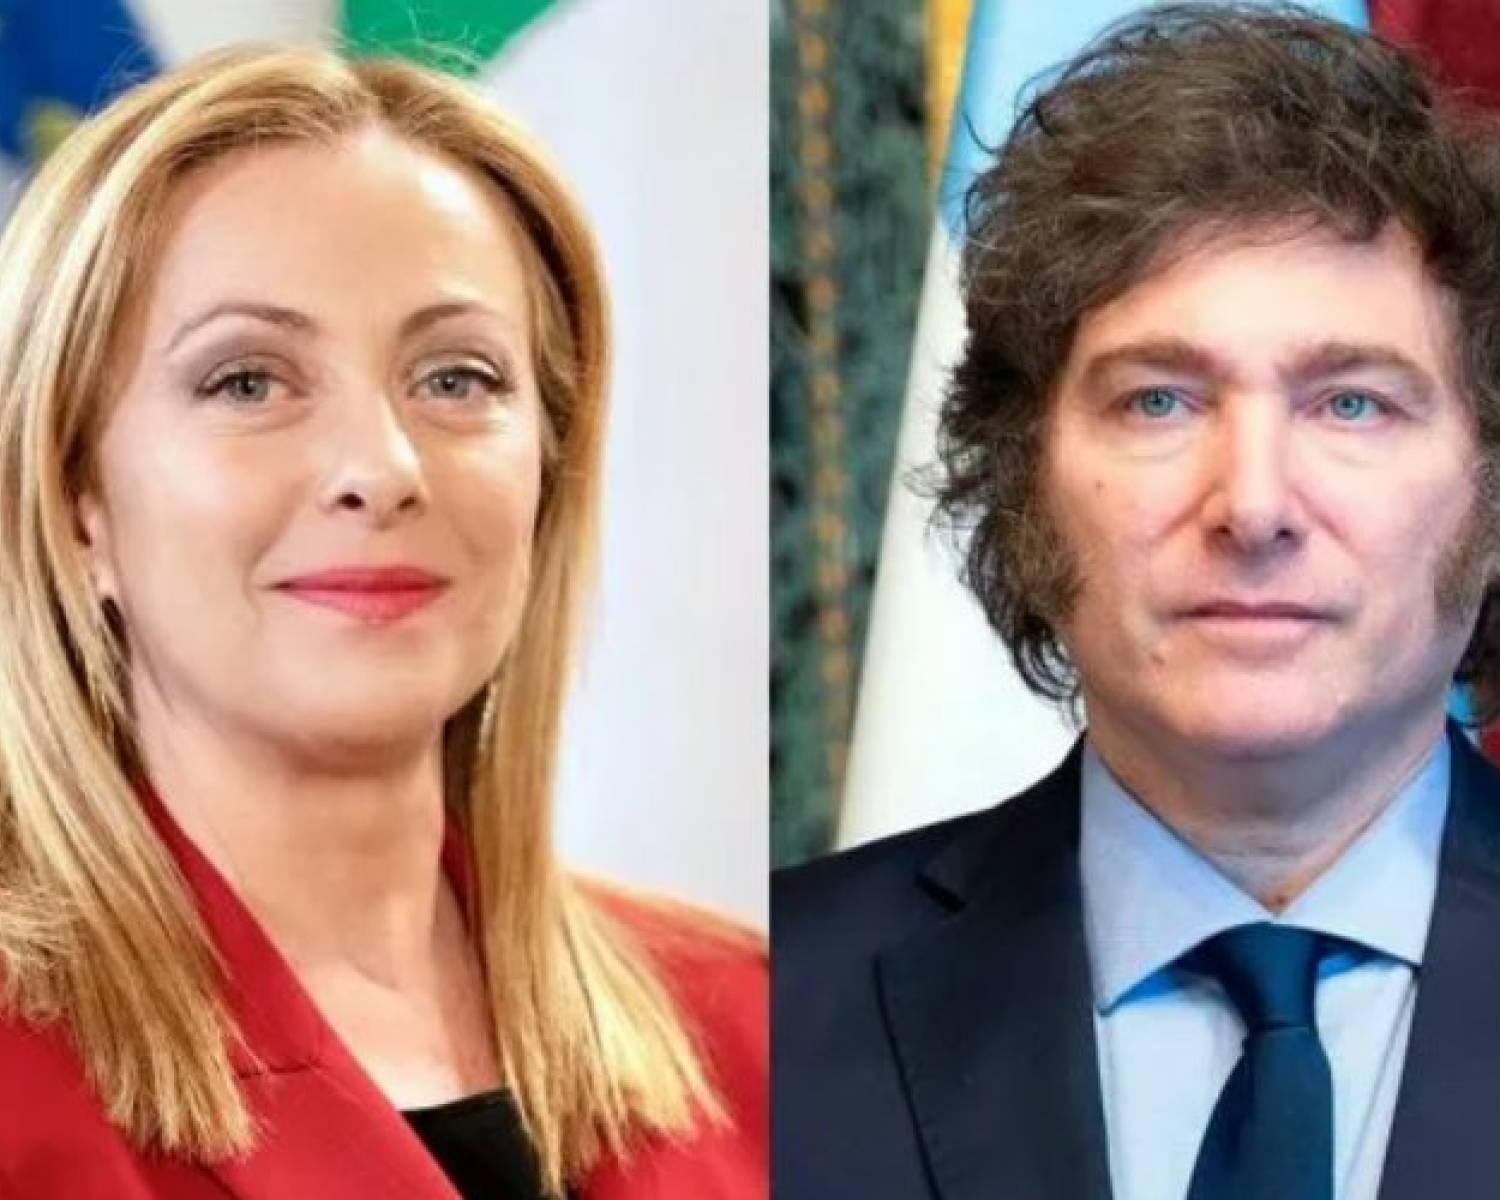 Giorgia Meloni invitó a Javier Milei a disertar sobre IA en el G7